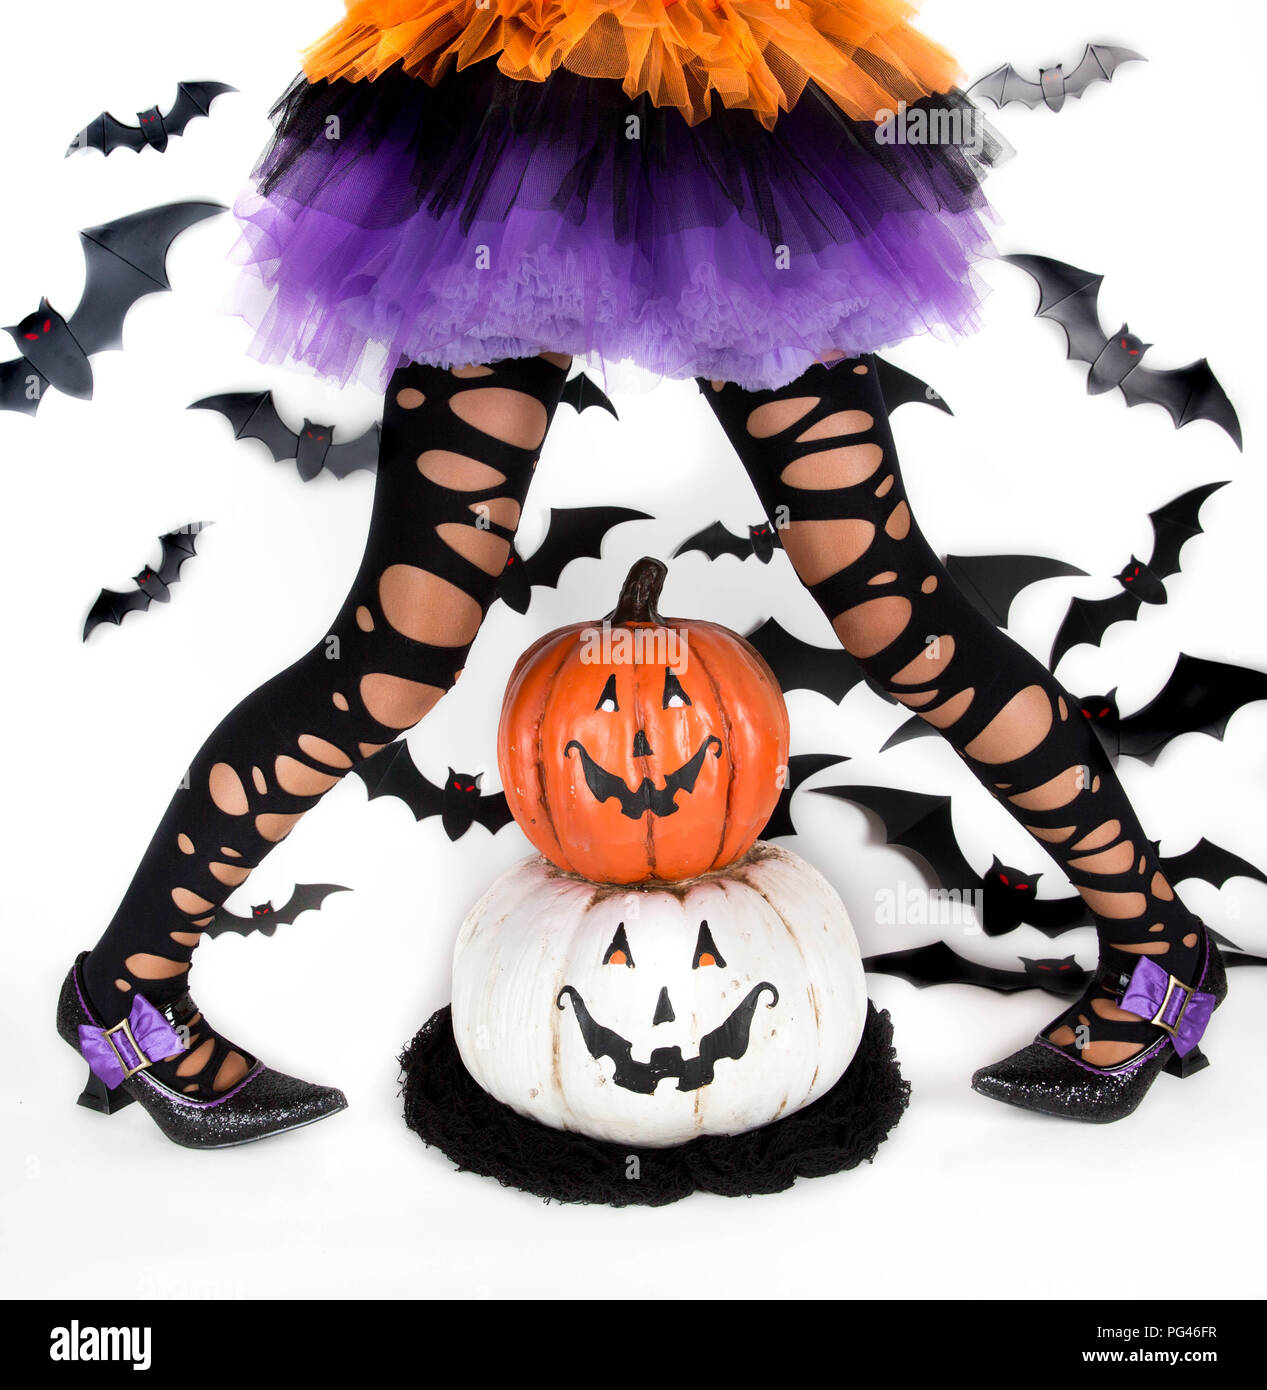 Funny ragged gambe di una bambina con il costume di halloween di una strega con scarpe strega e smiley zucca di halloween jack o lantern Foto Stock